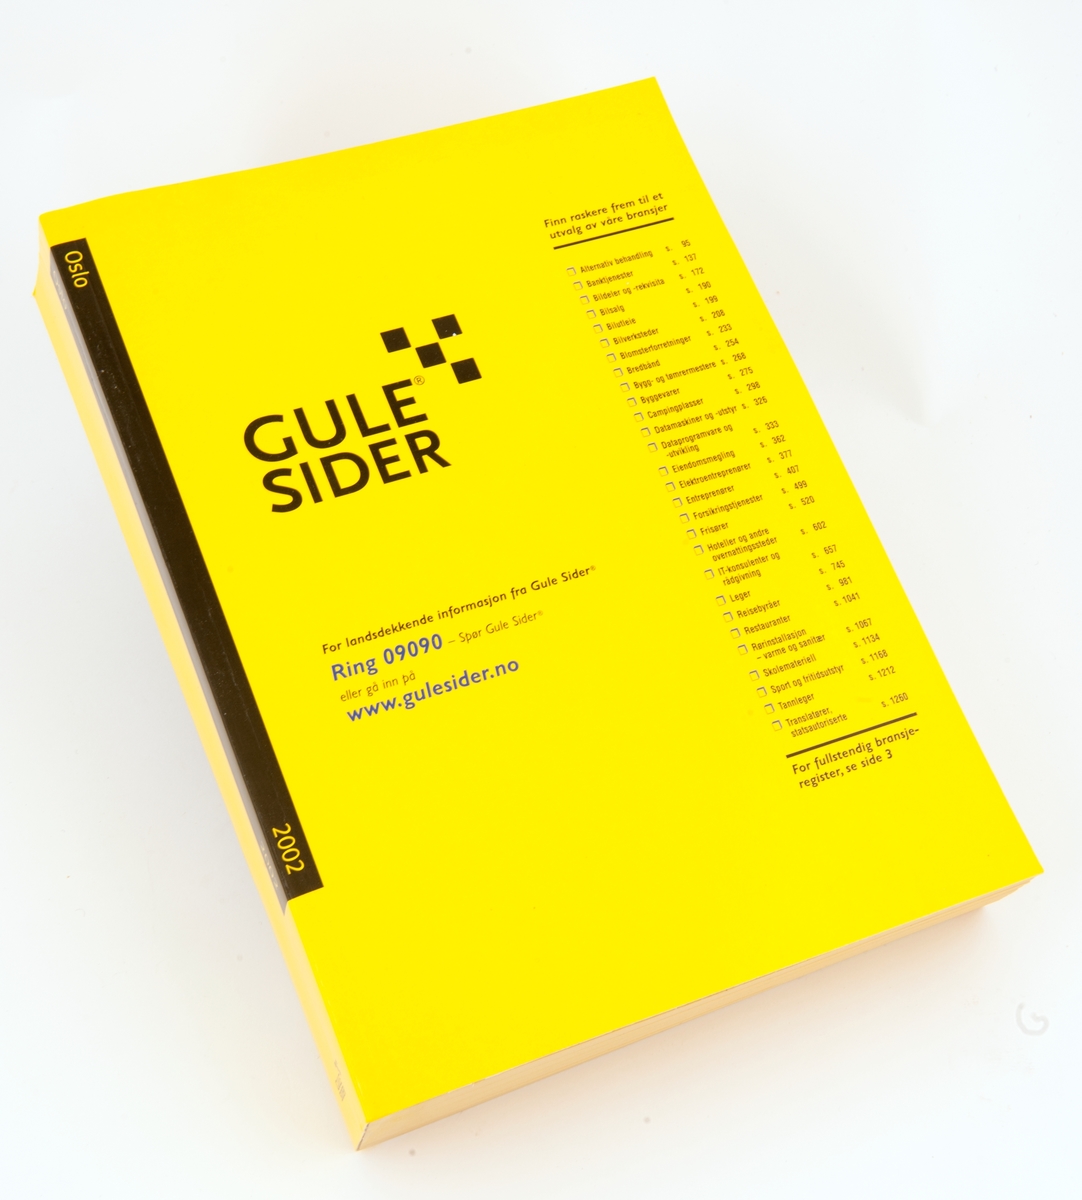 En telefonkatalog fra Oslo 2001. To kataloger for Gule sider fra 2001 og 2002.